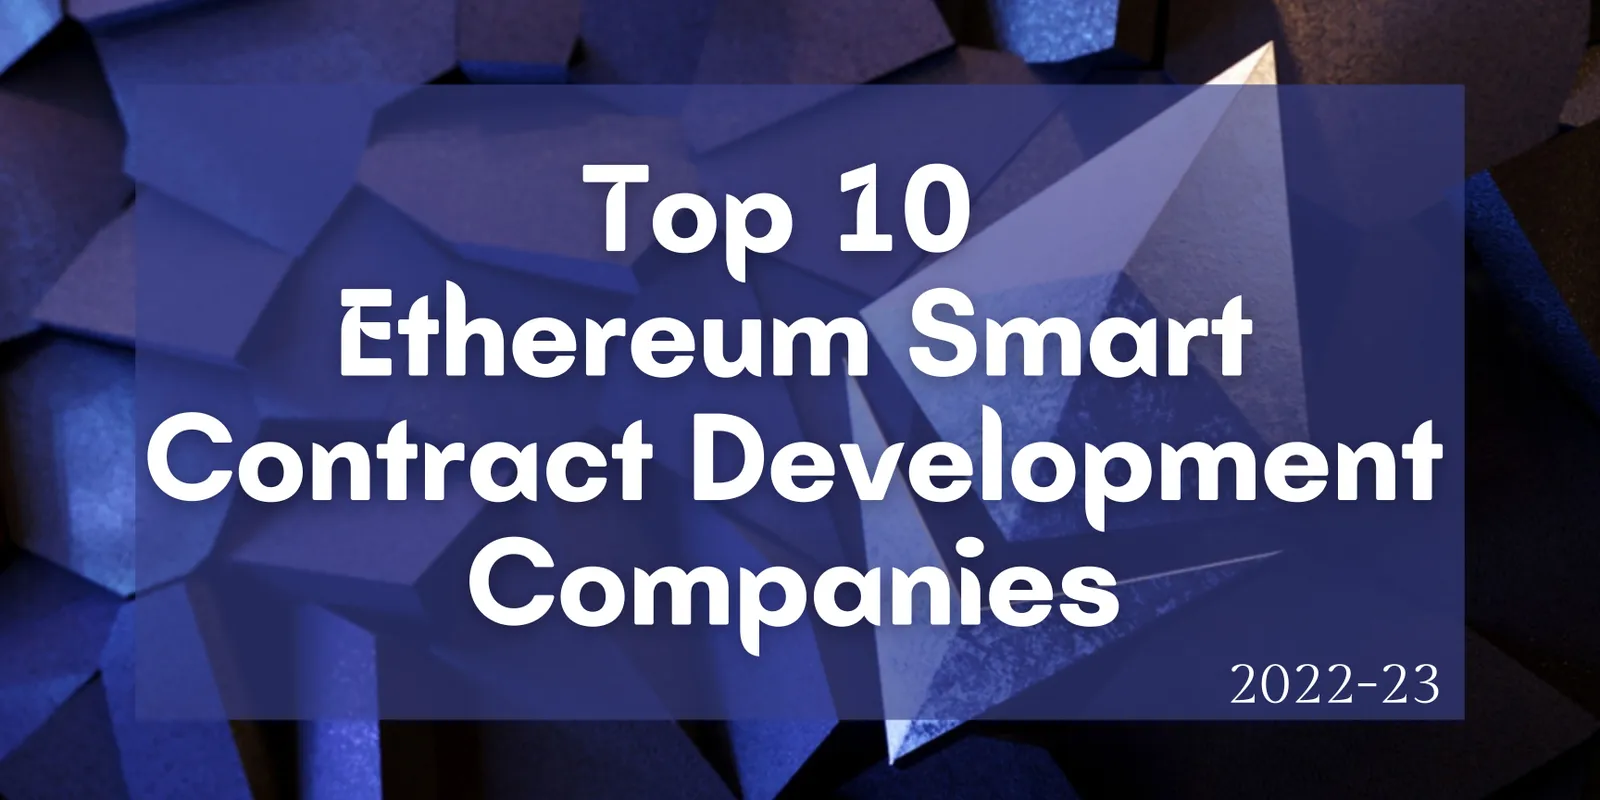 Top 10 Ethereum Smart Contract Development Companies 2022-23